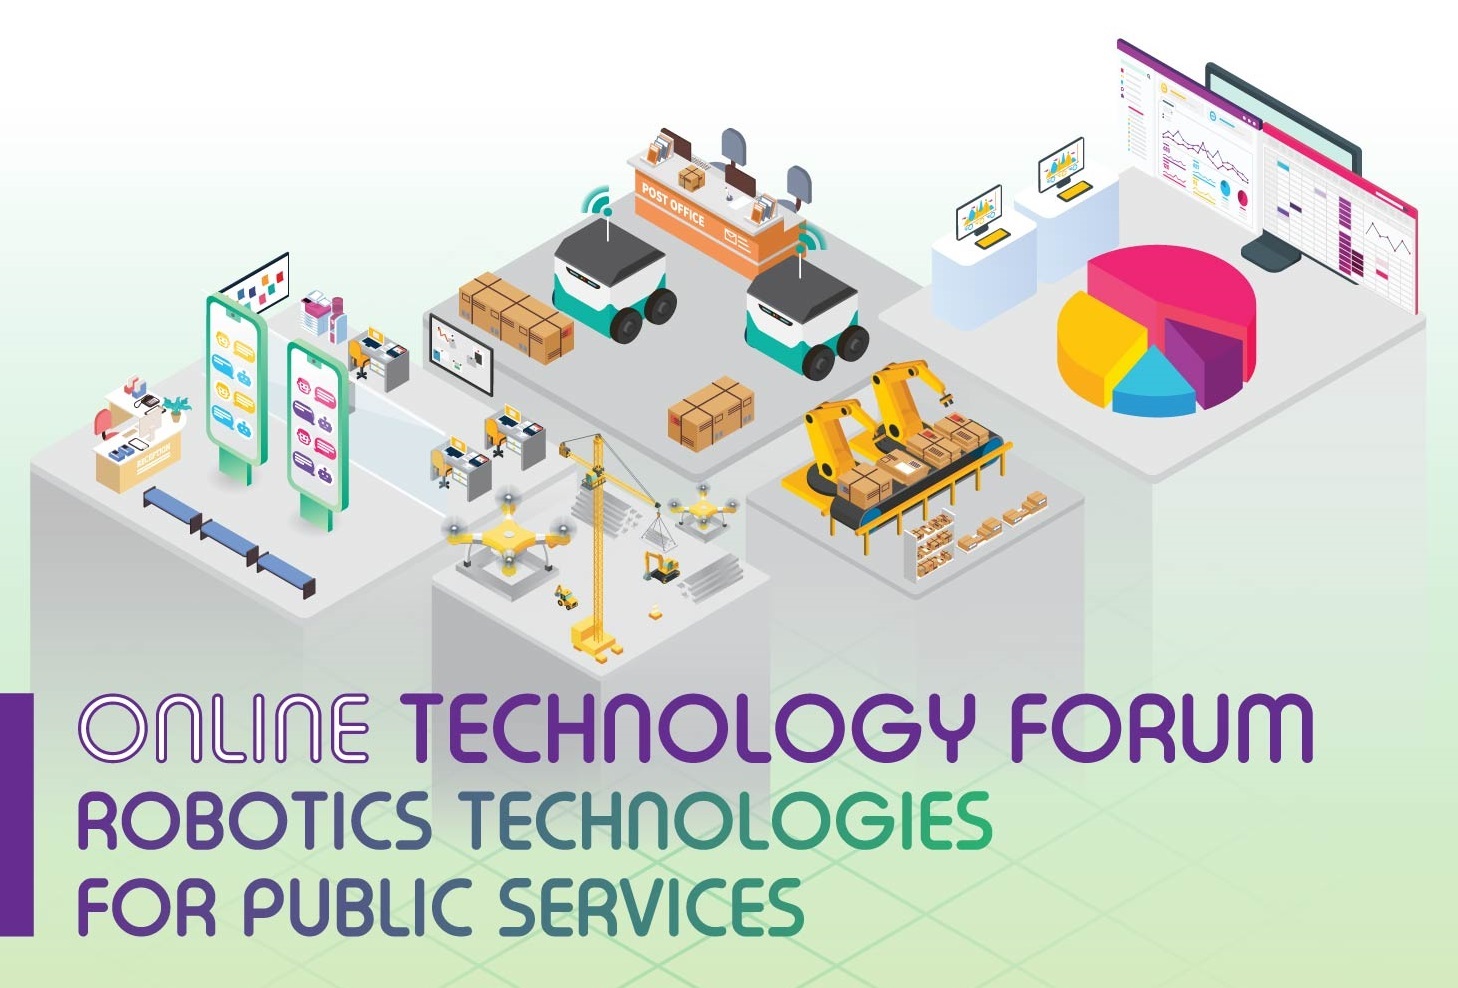 Technology Forum - Robotics Technologies for Public Services